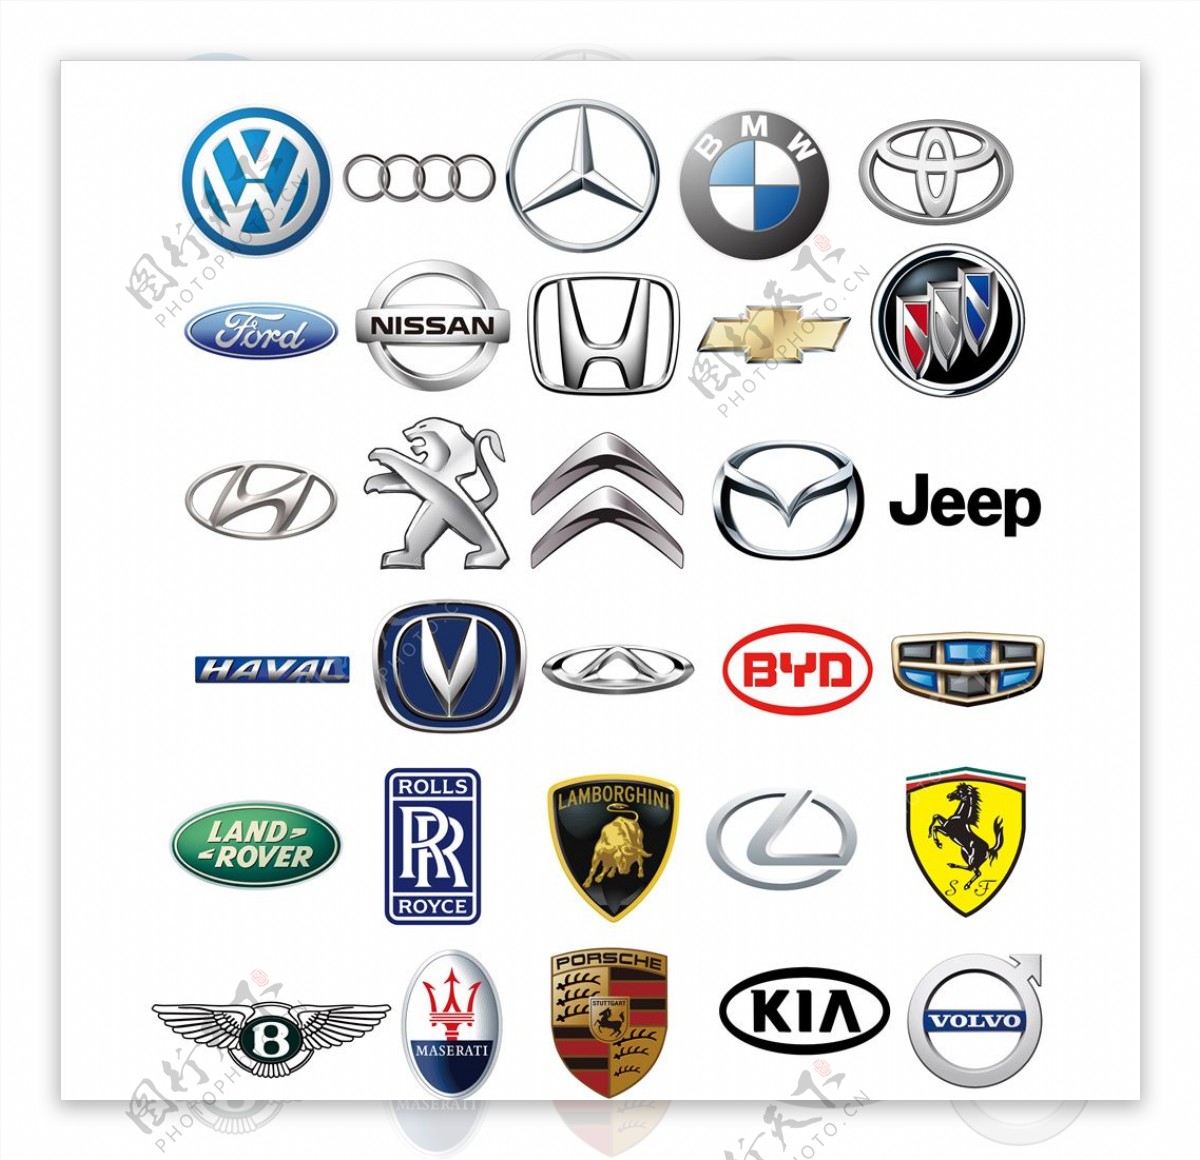 汽车品牌图片